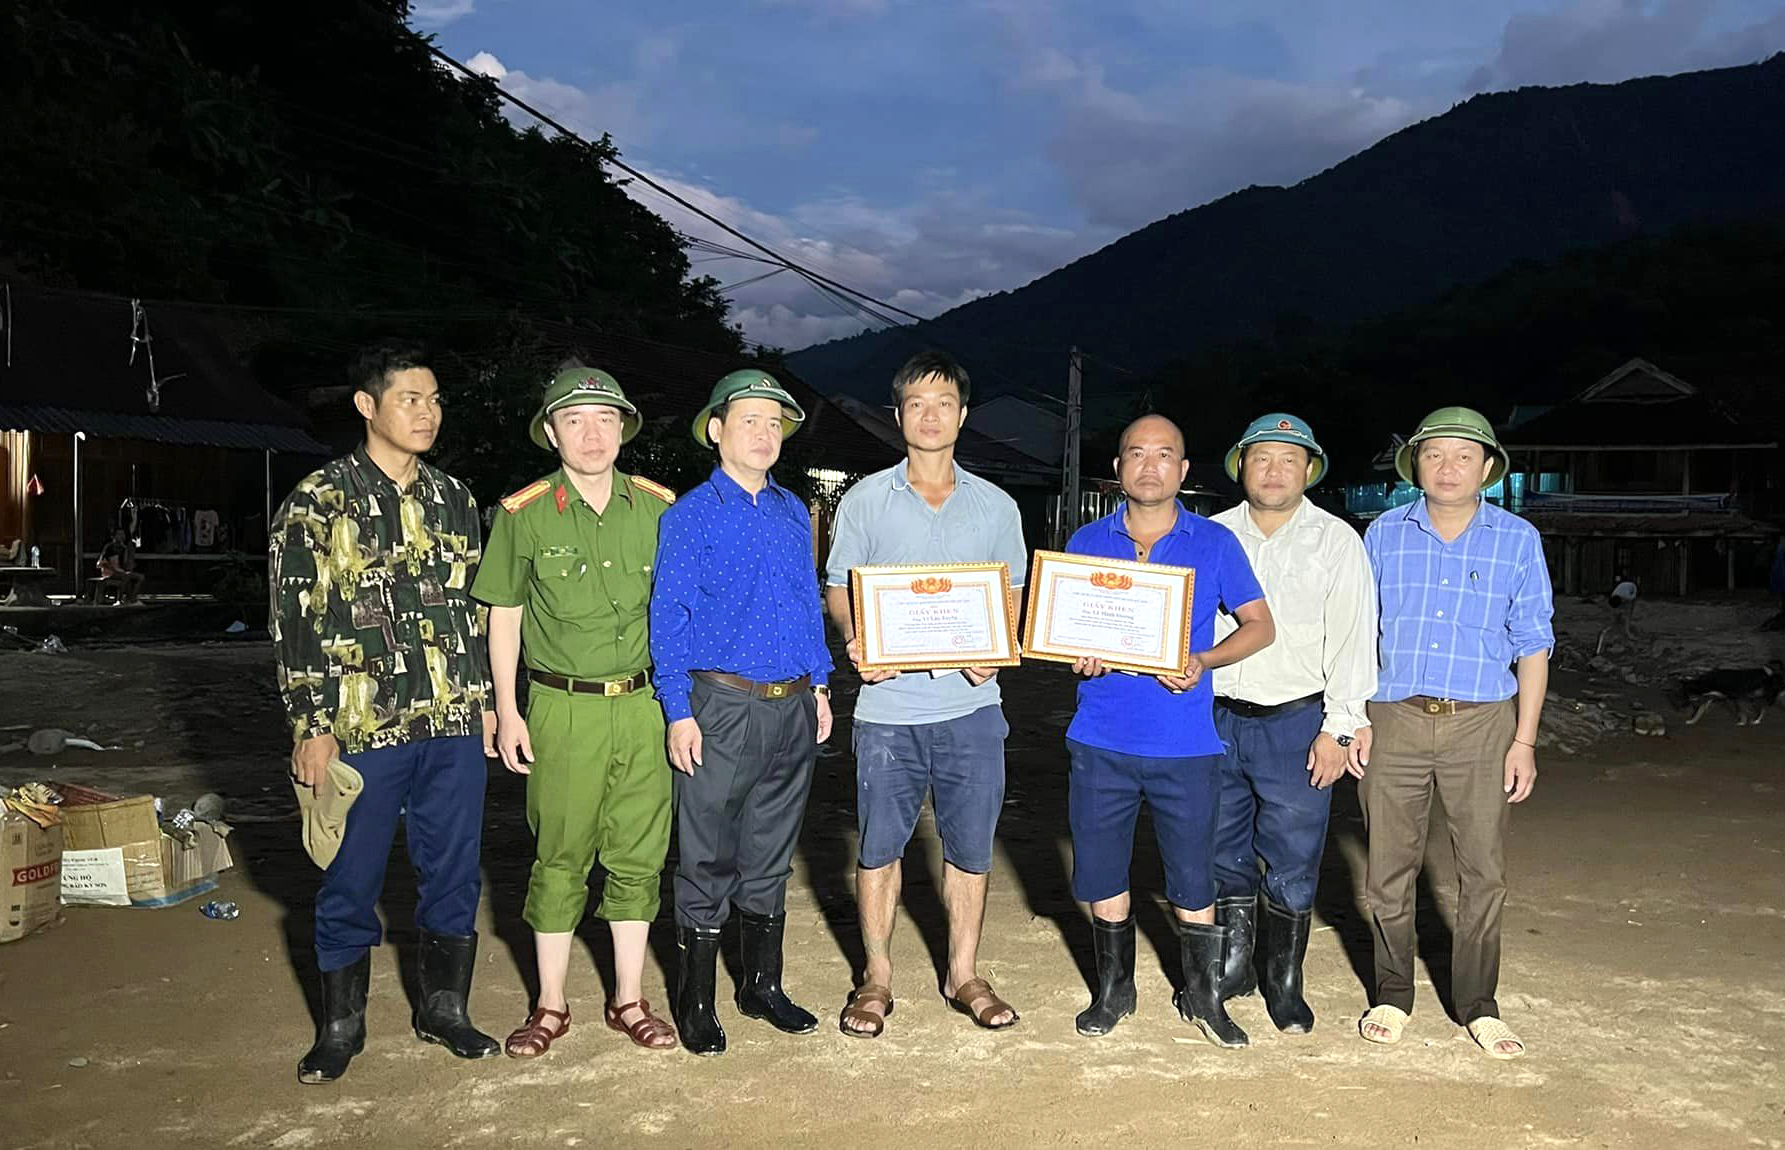 UBND huyện Kỳ Sơn tặng giấy khen cho 2 người dân dũng cảm cứu người